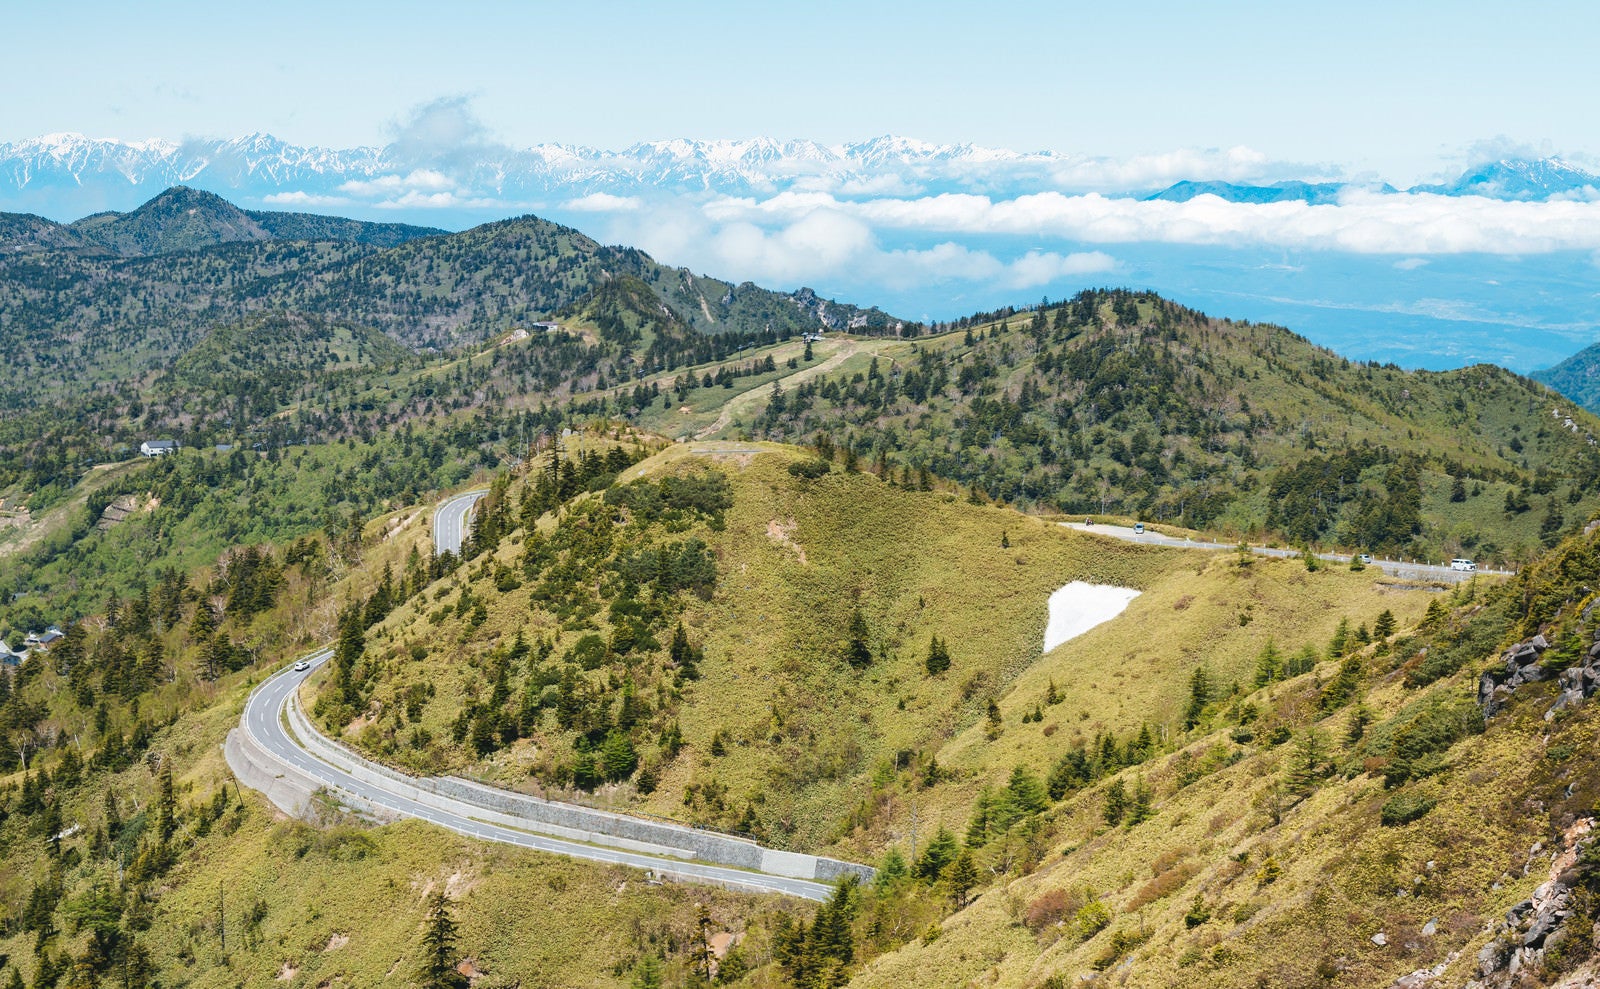 「遠くにアルプス山脈が見える白根山からの景観」の写真